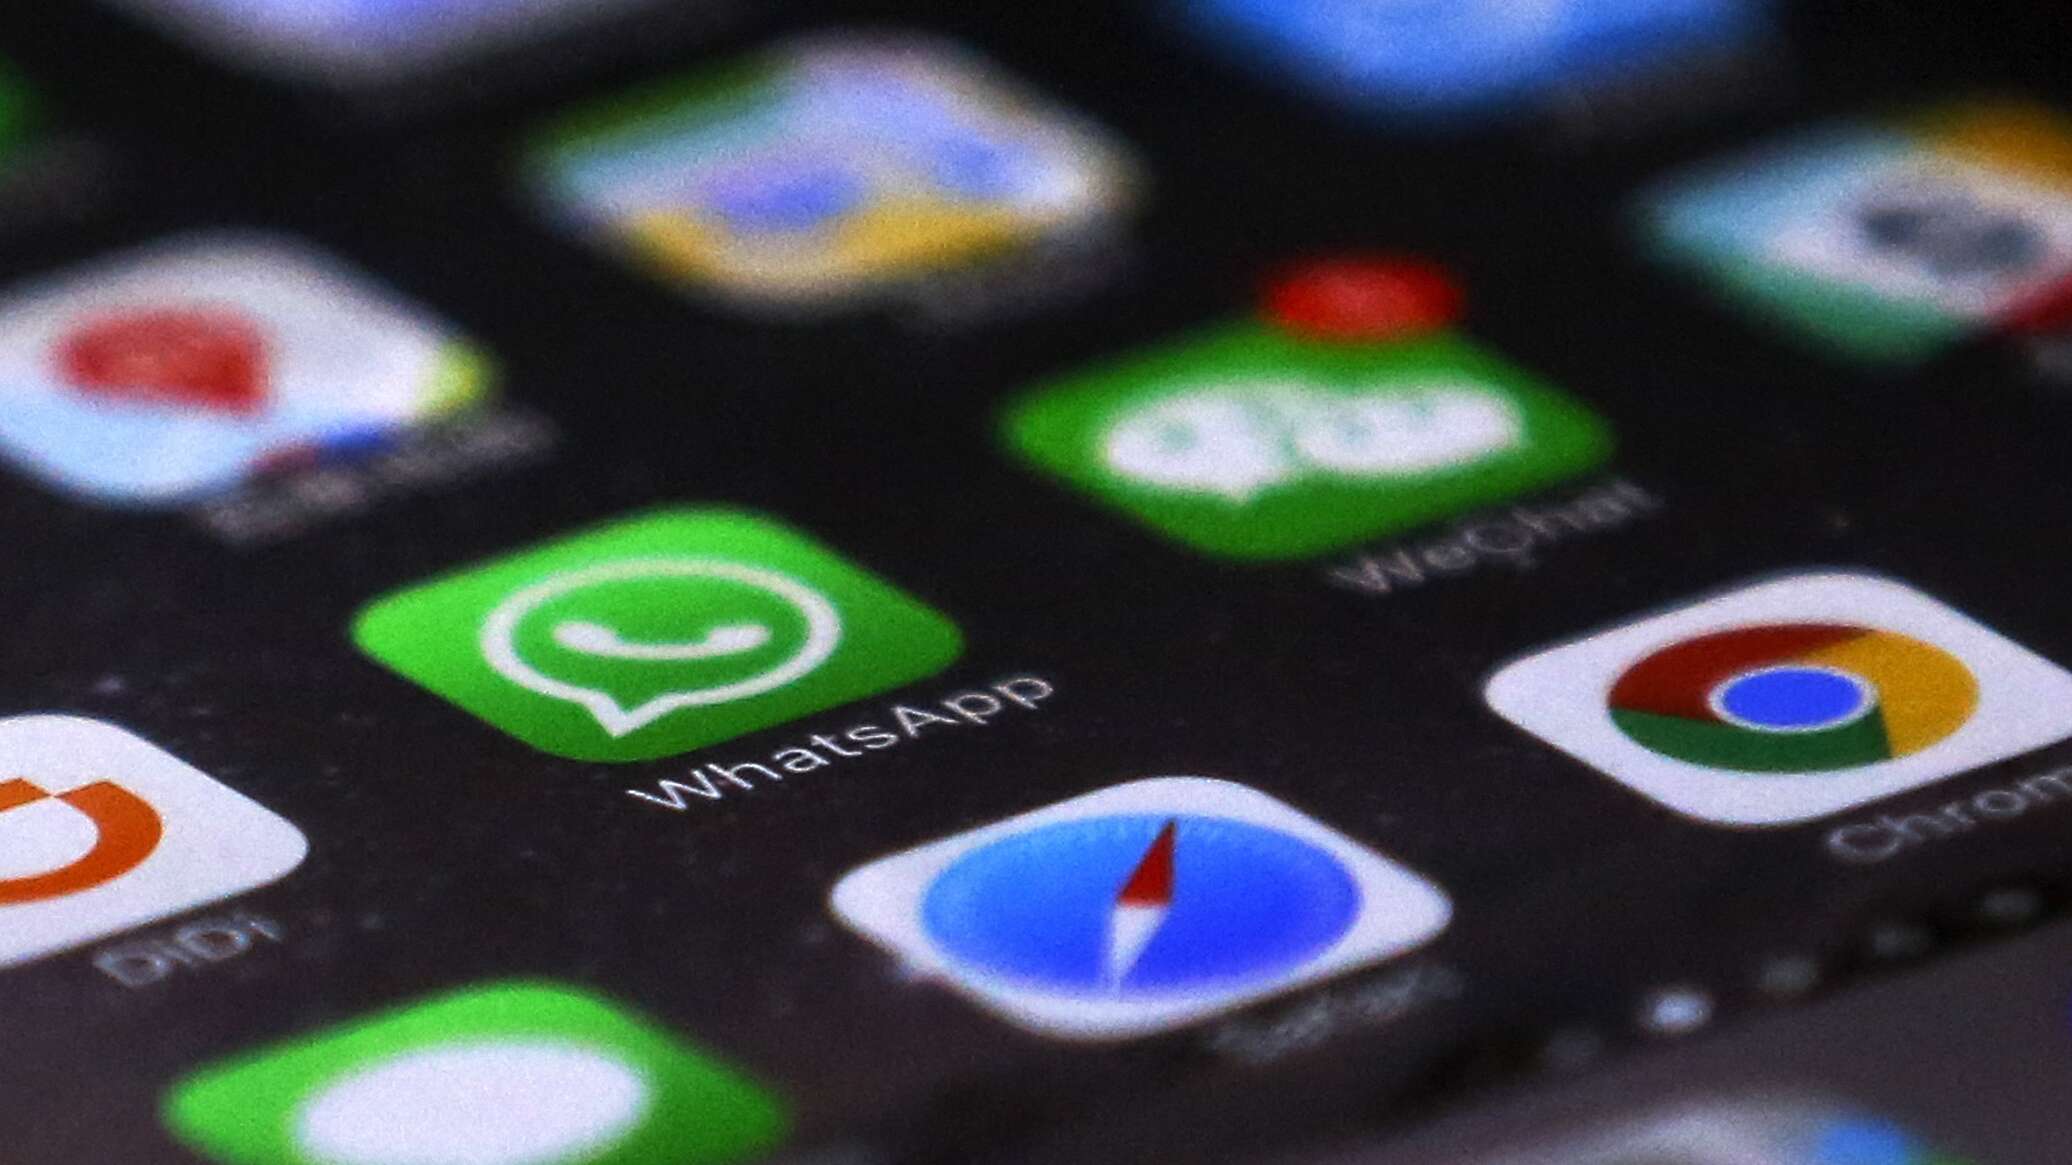 إعلام: منع أعضاء الحكومة الفرنسية من استخدام "واتسآب" و"تلغرام"